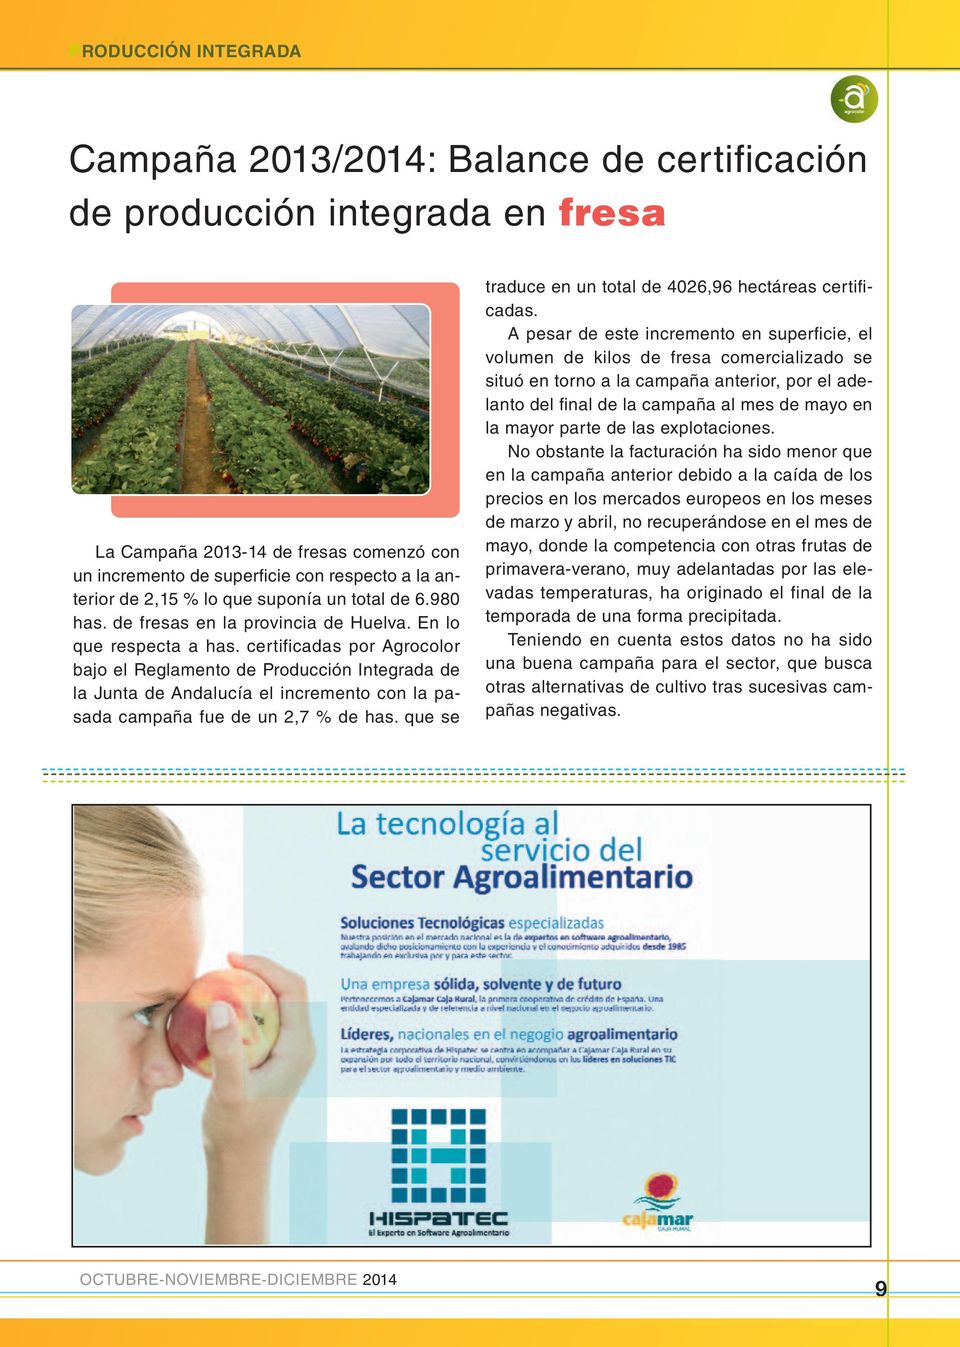 certificadas por Agrocolor bajo el Reglamento de Producción Integrada de la Junta de Andalucía el incremento con la pasada campaña fue de un 2,7 % de has.